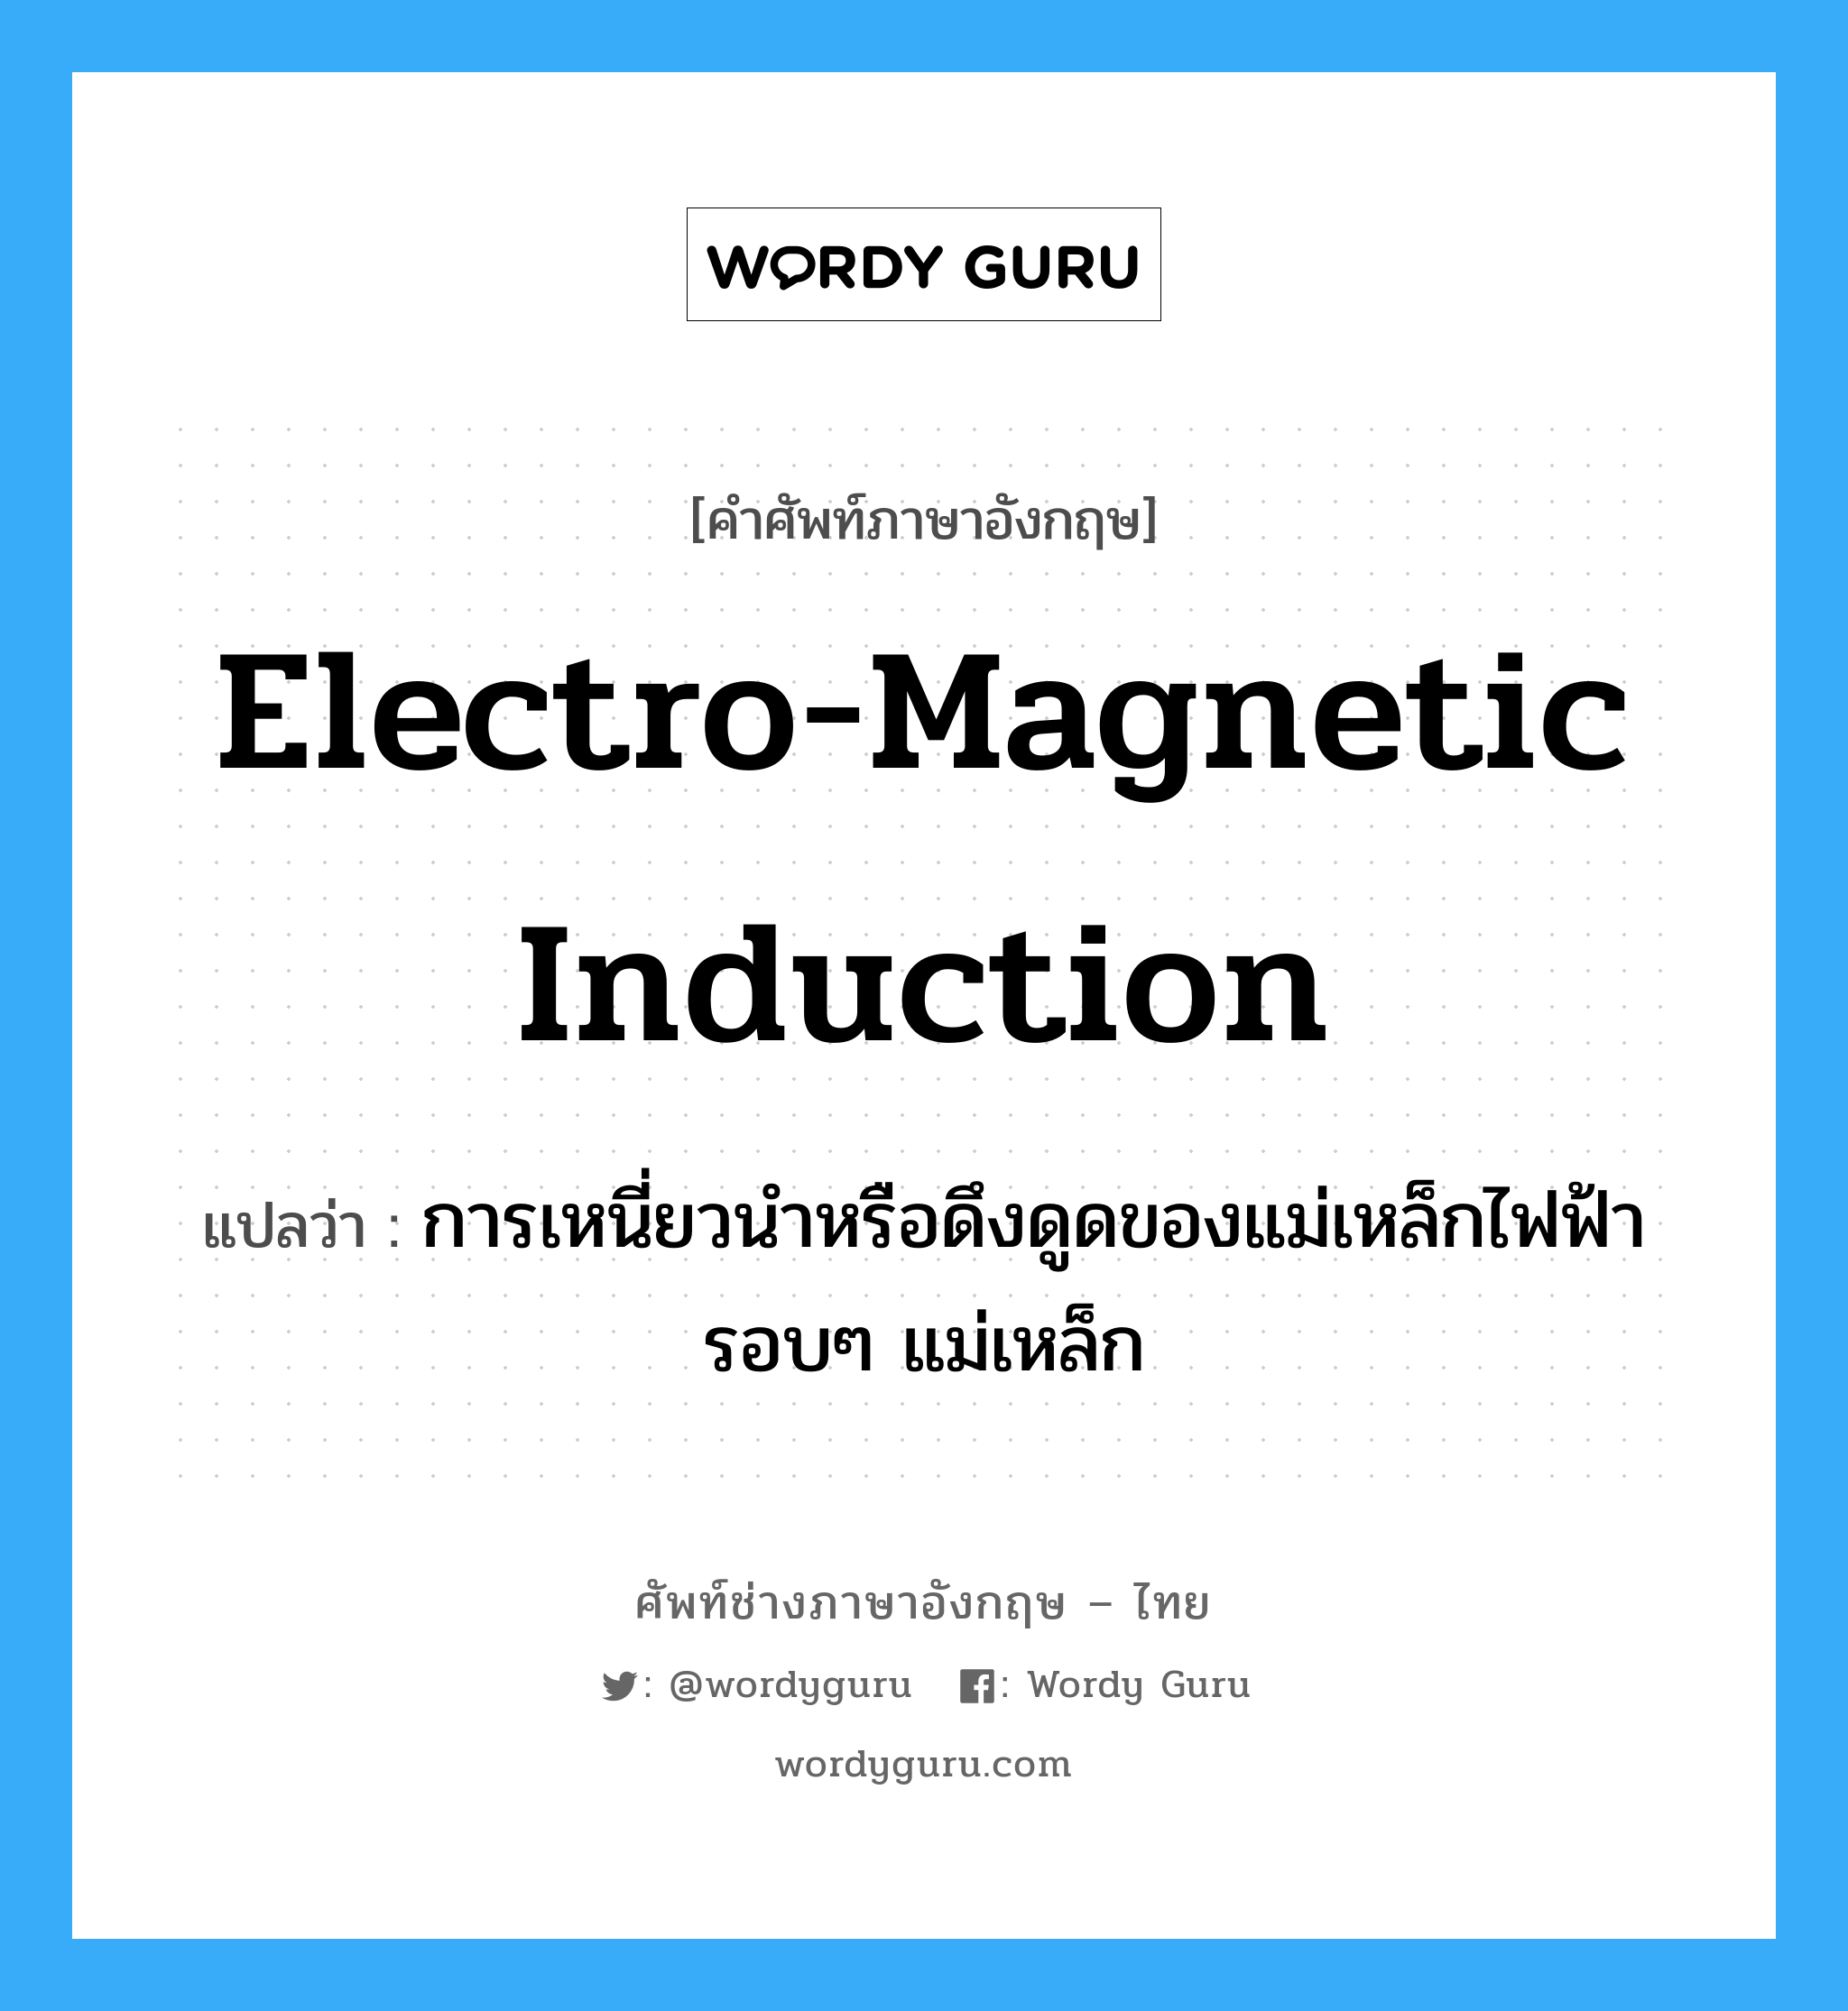 electro-magnetic induction แปลว่า?, คำศัพท์ช่างภาษาอังกฤษ - ไทย electro-magnetic induction คำศัพท์ภาษาอังกฤษ electro-magnetic induction แปลว่า การเหนี่ยวนำหรือดึงดูดของแม่เหล็กไฟฟ้ารอบๆ แม่เหล็ก